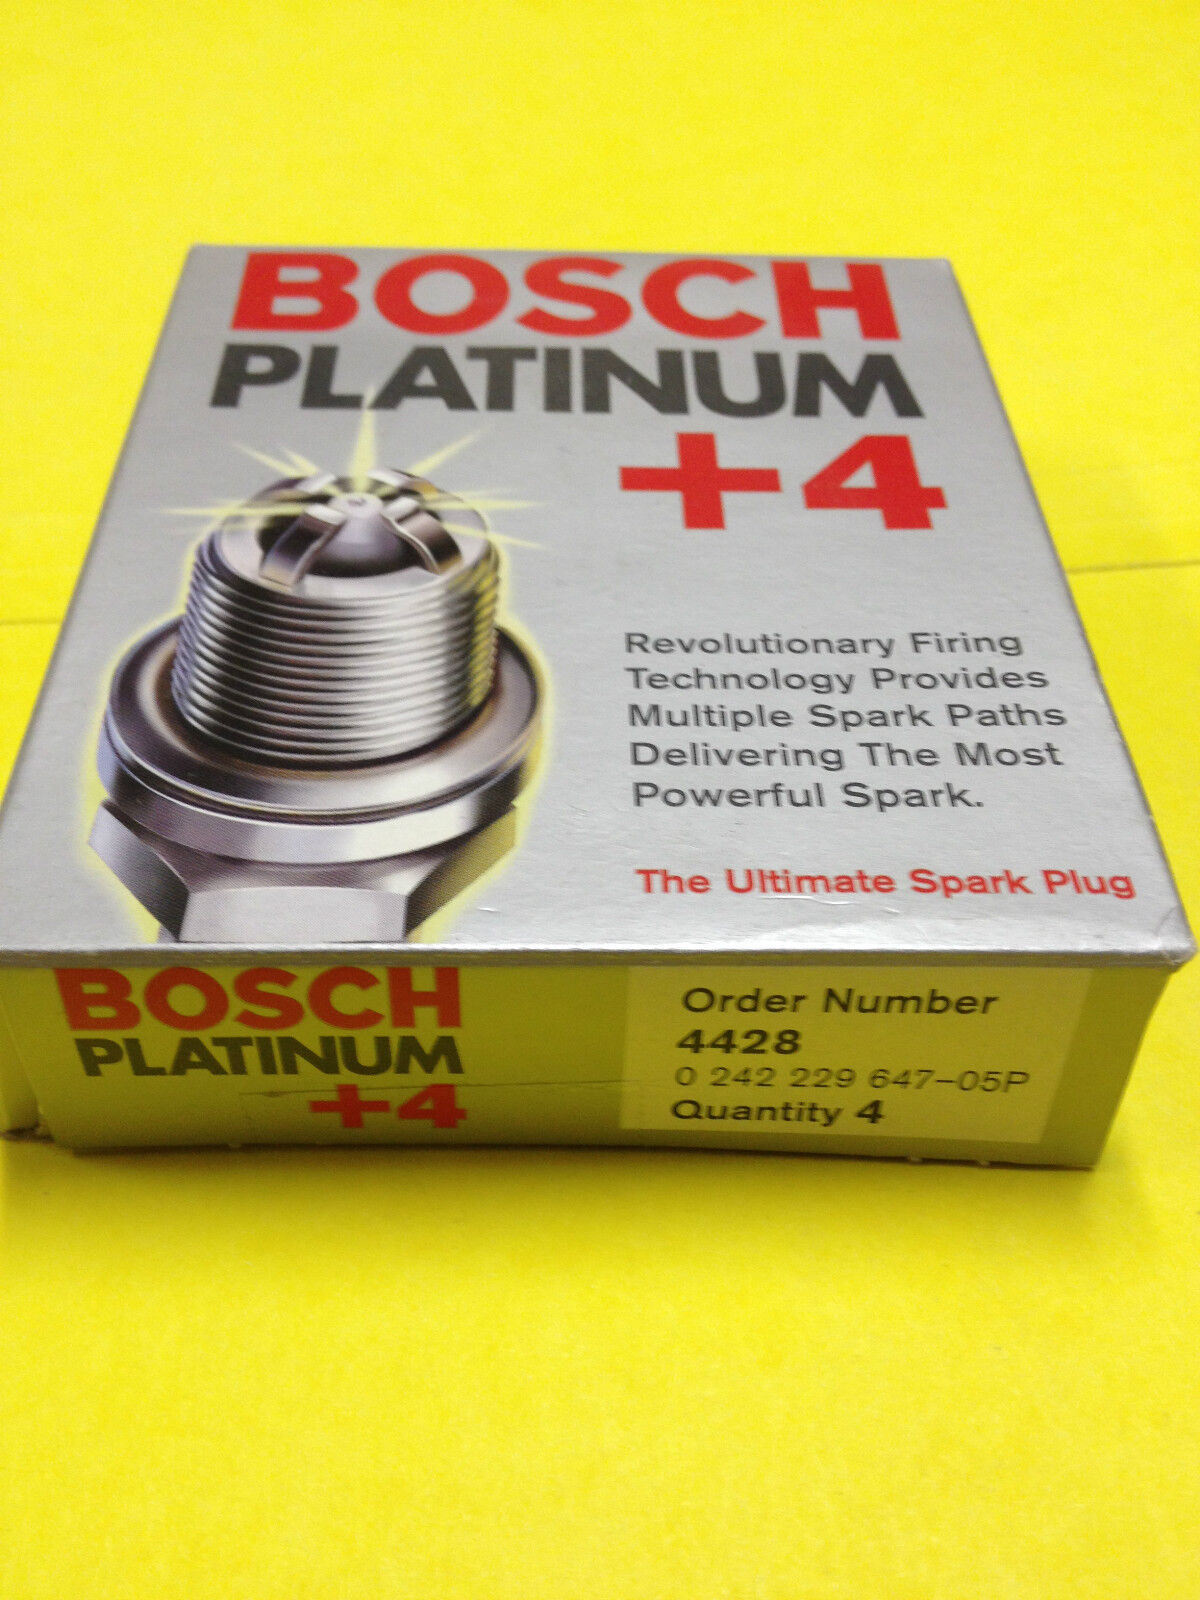 BOSCH PLATINUM +4 spark plug 4428 in original box set of 4 plugs 0242229647